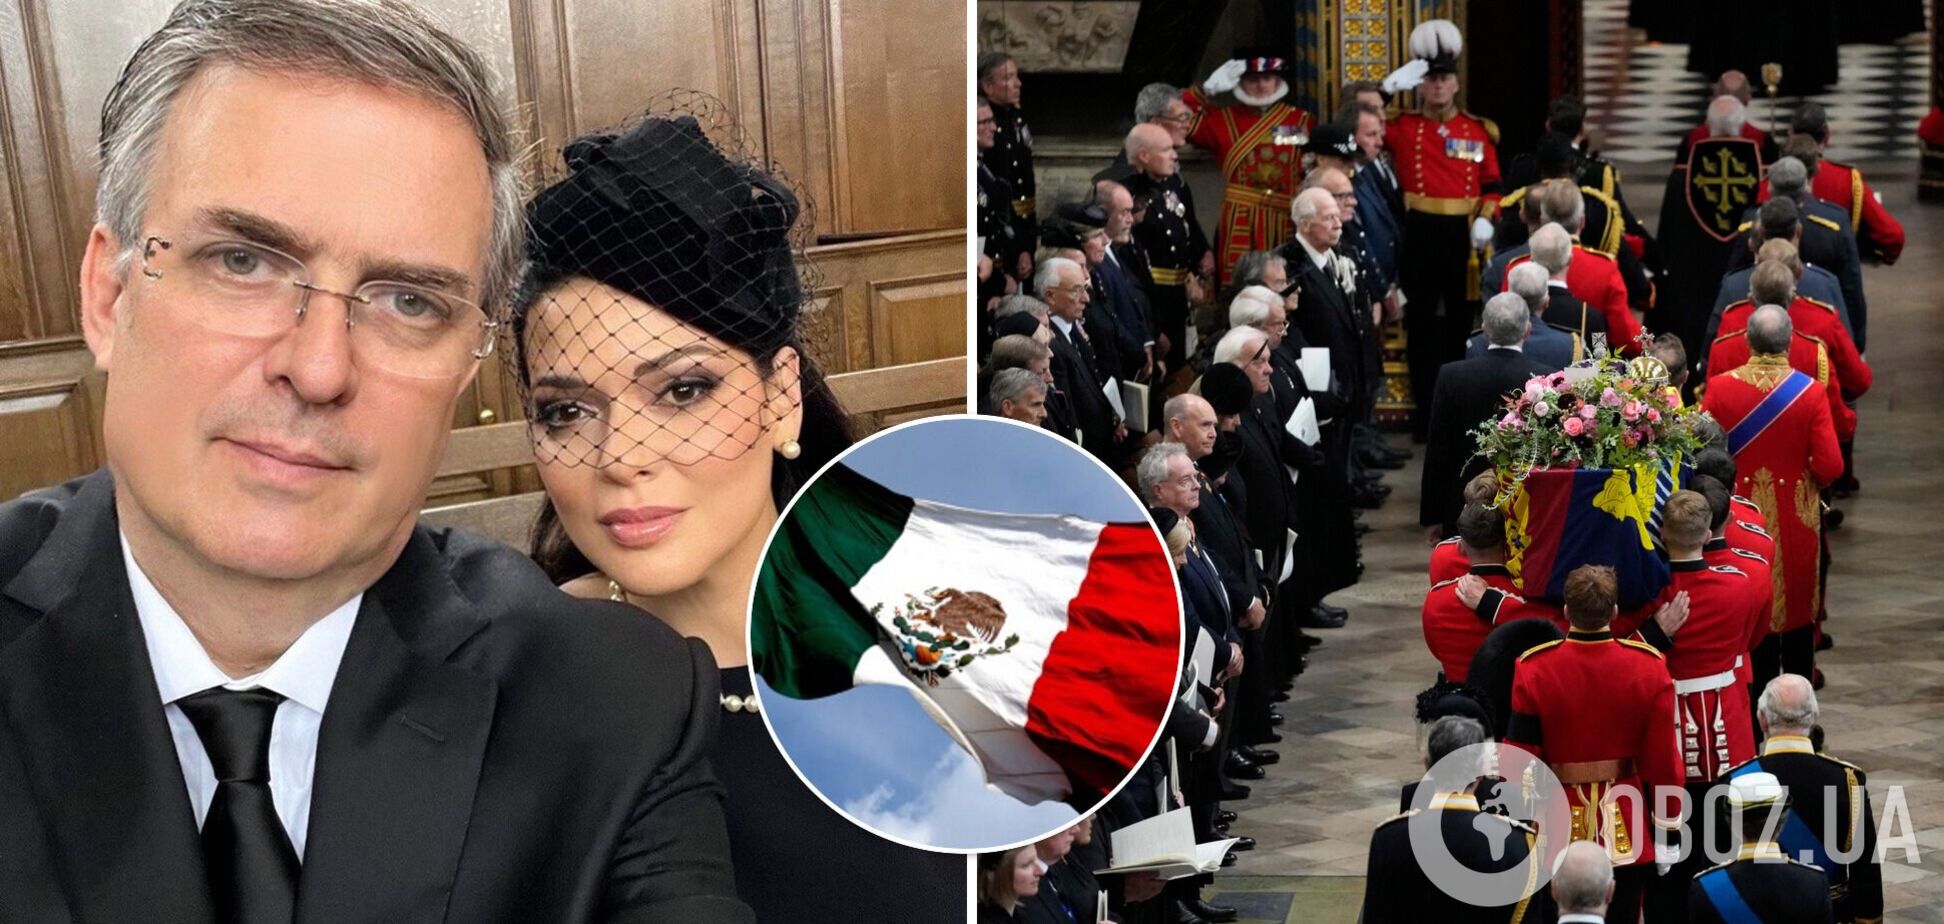 Мексиканского политика захейтили из-за селфи с супругой на похоронах Елизаветы II. Фото, повлекшее за собой скандал